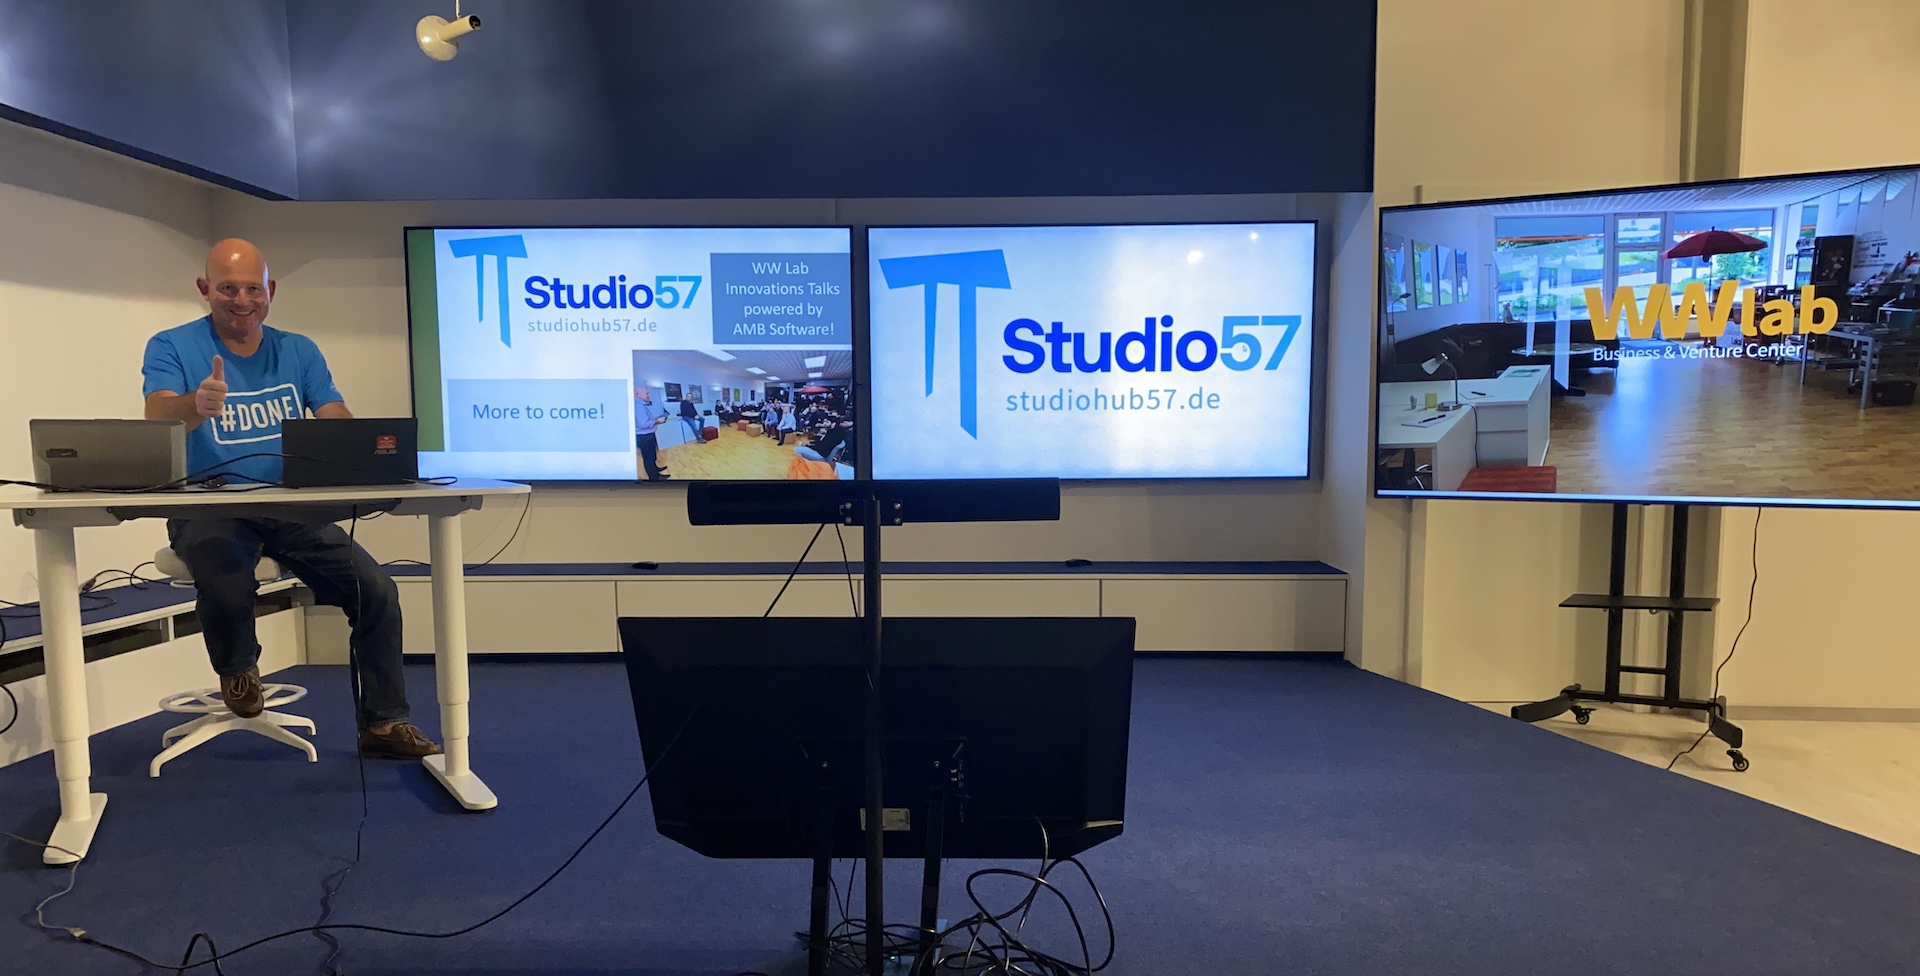 StudioHub 57: Innovation Space